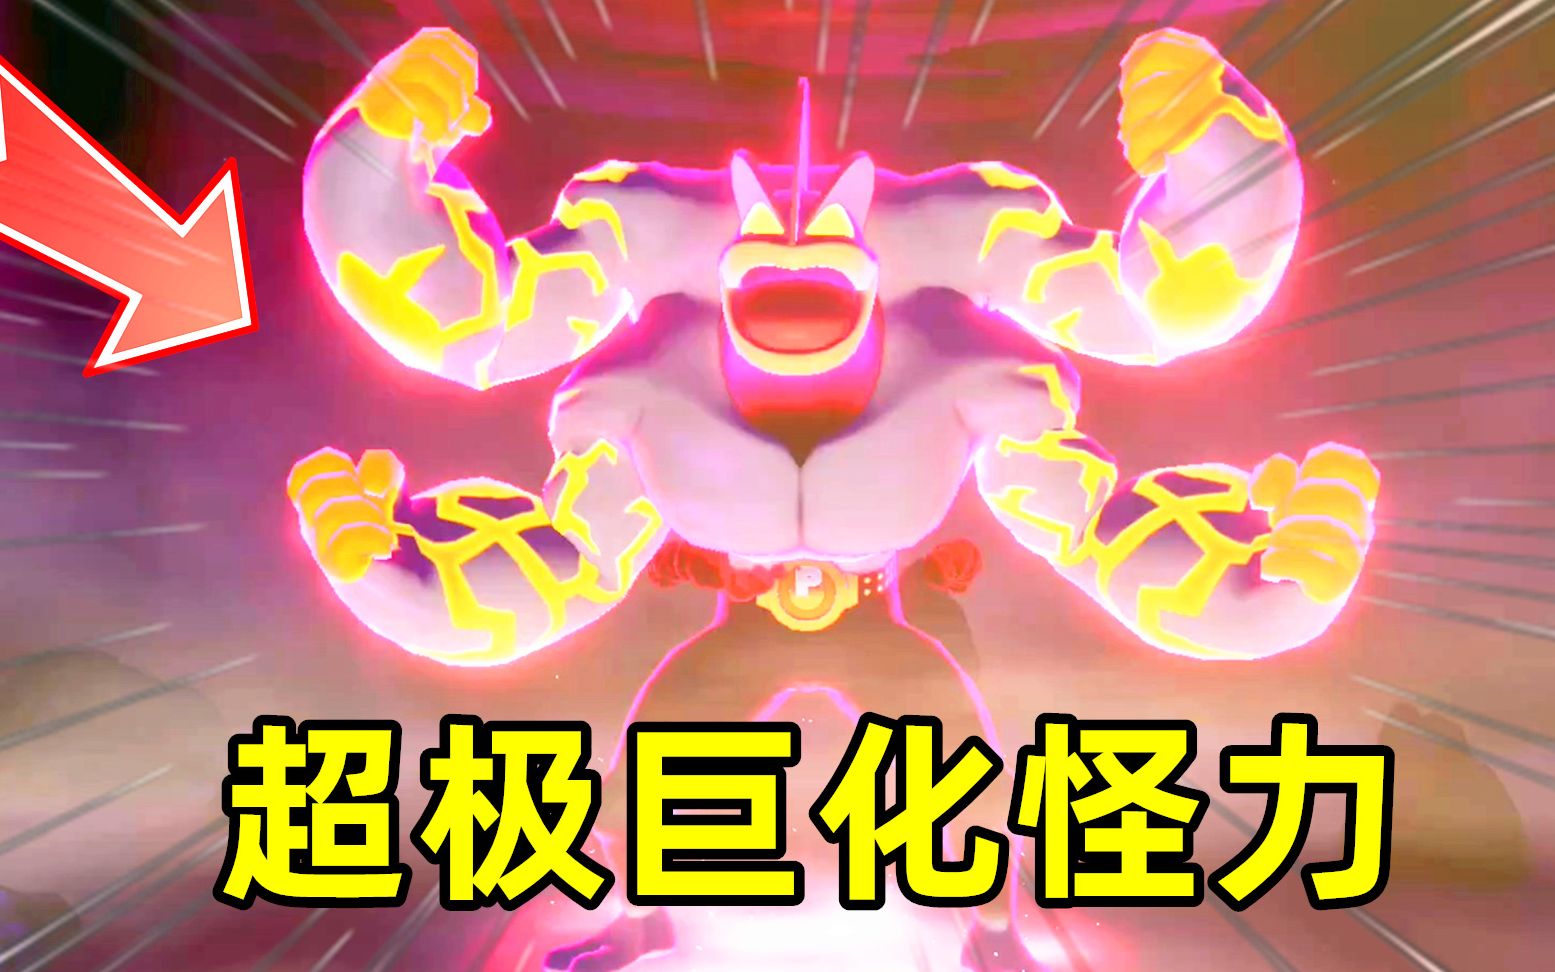 精灵宝可梦盾62:挑战超极巨化怪力,它有四个超大手臂!